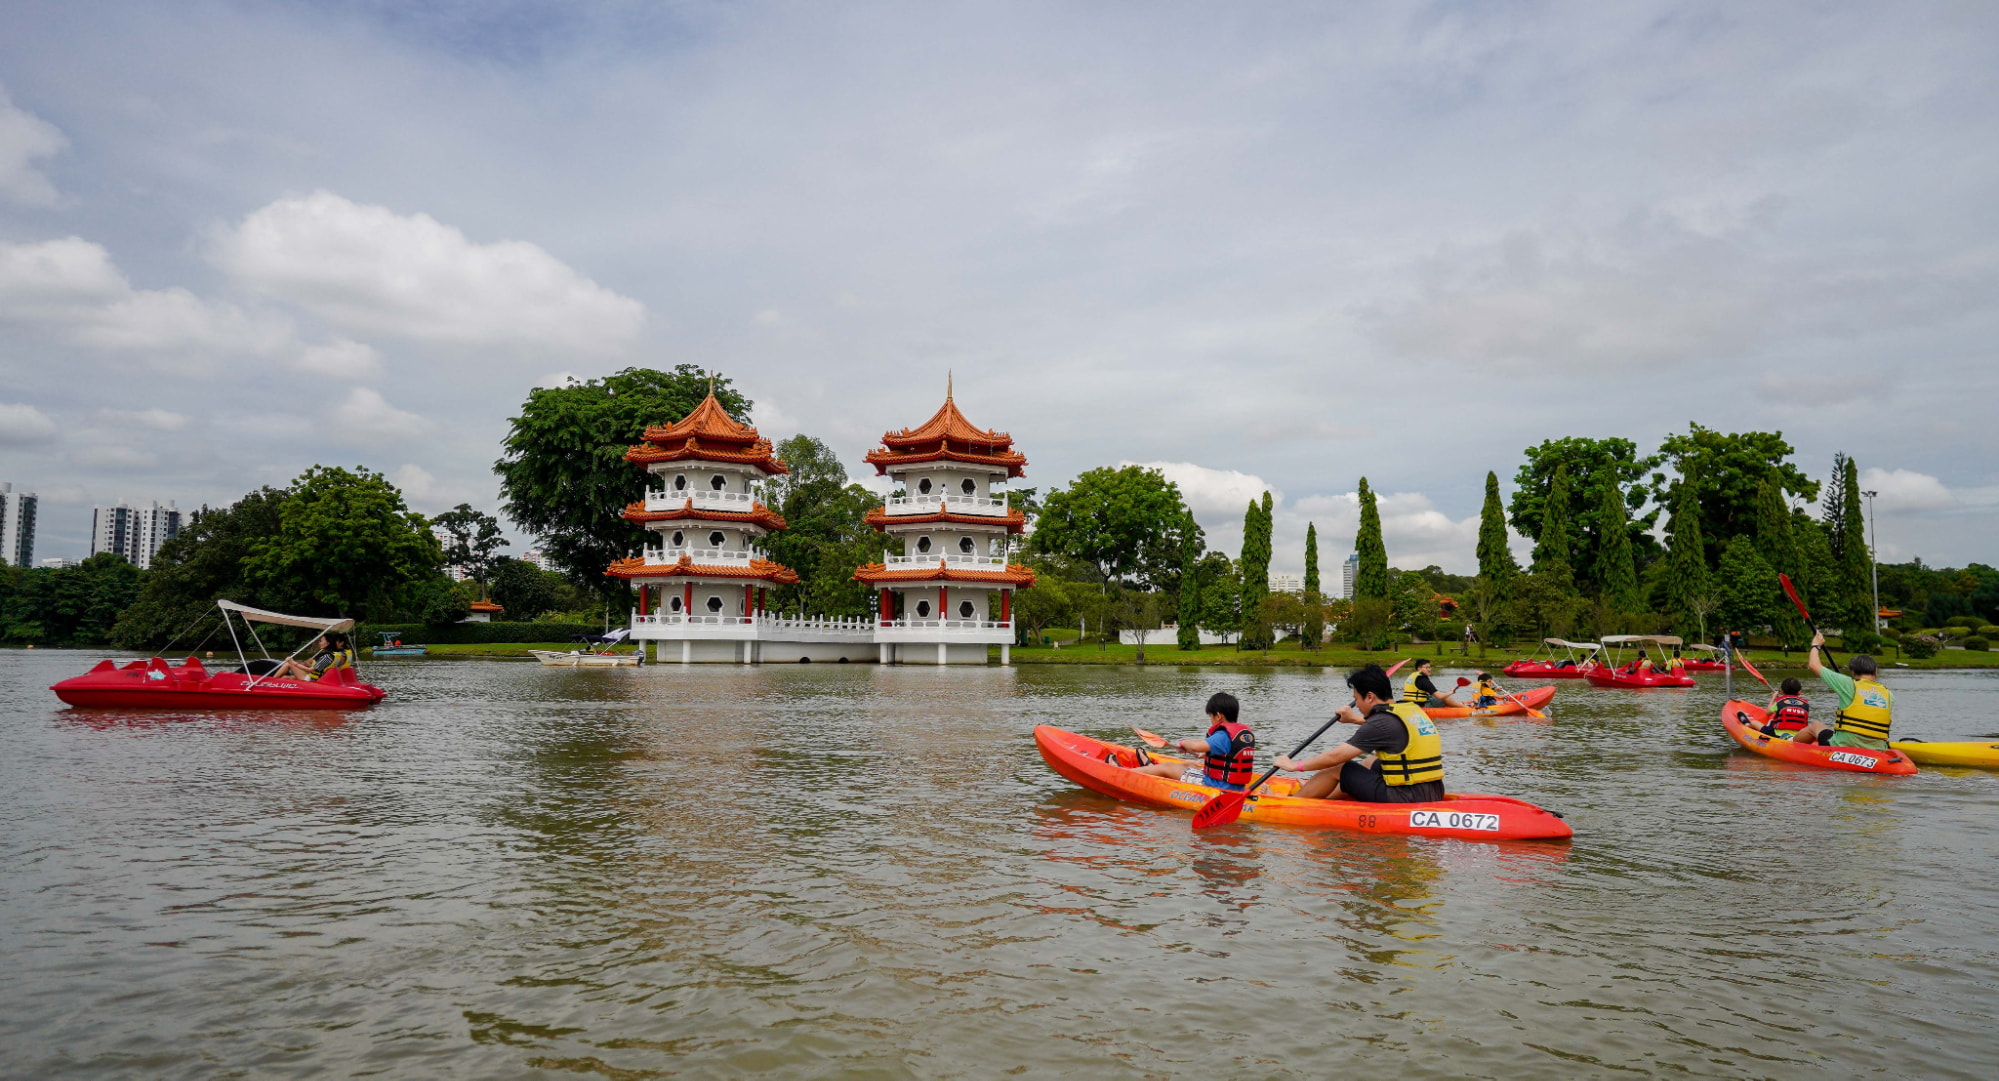 kayaking at jurong lake gardens